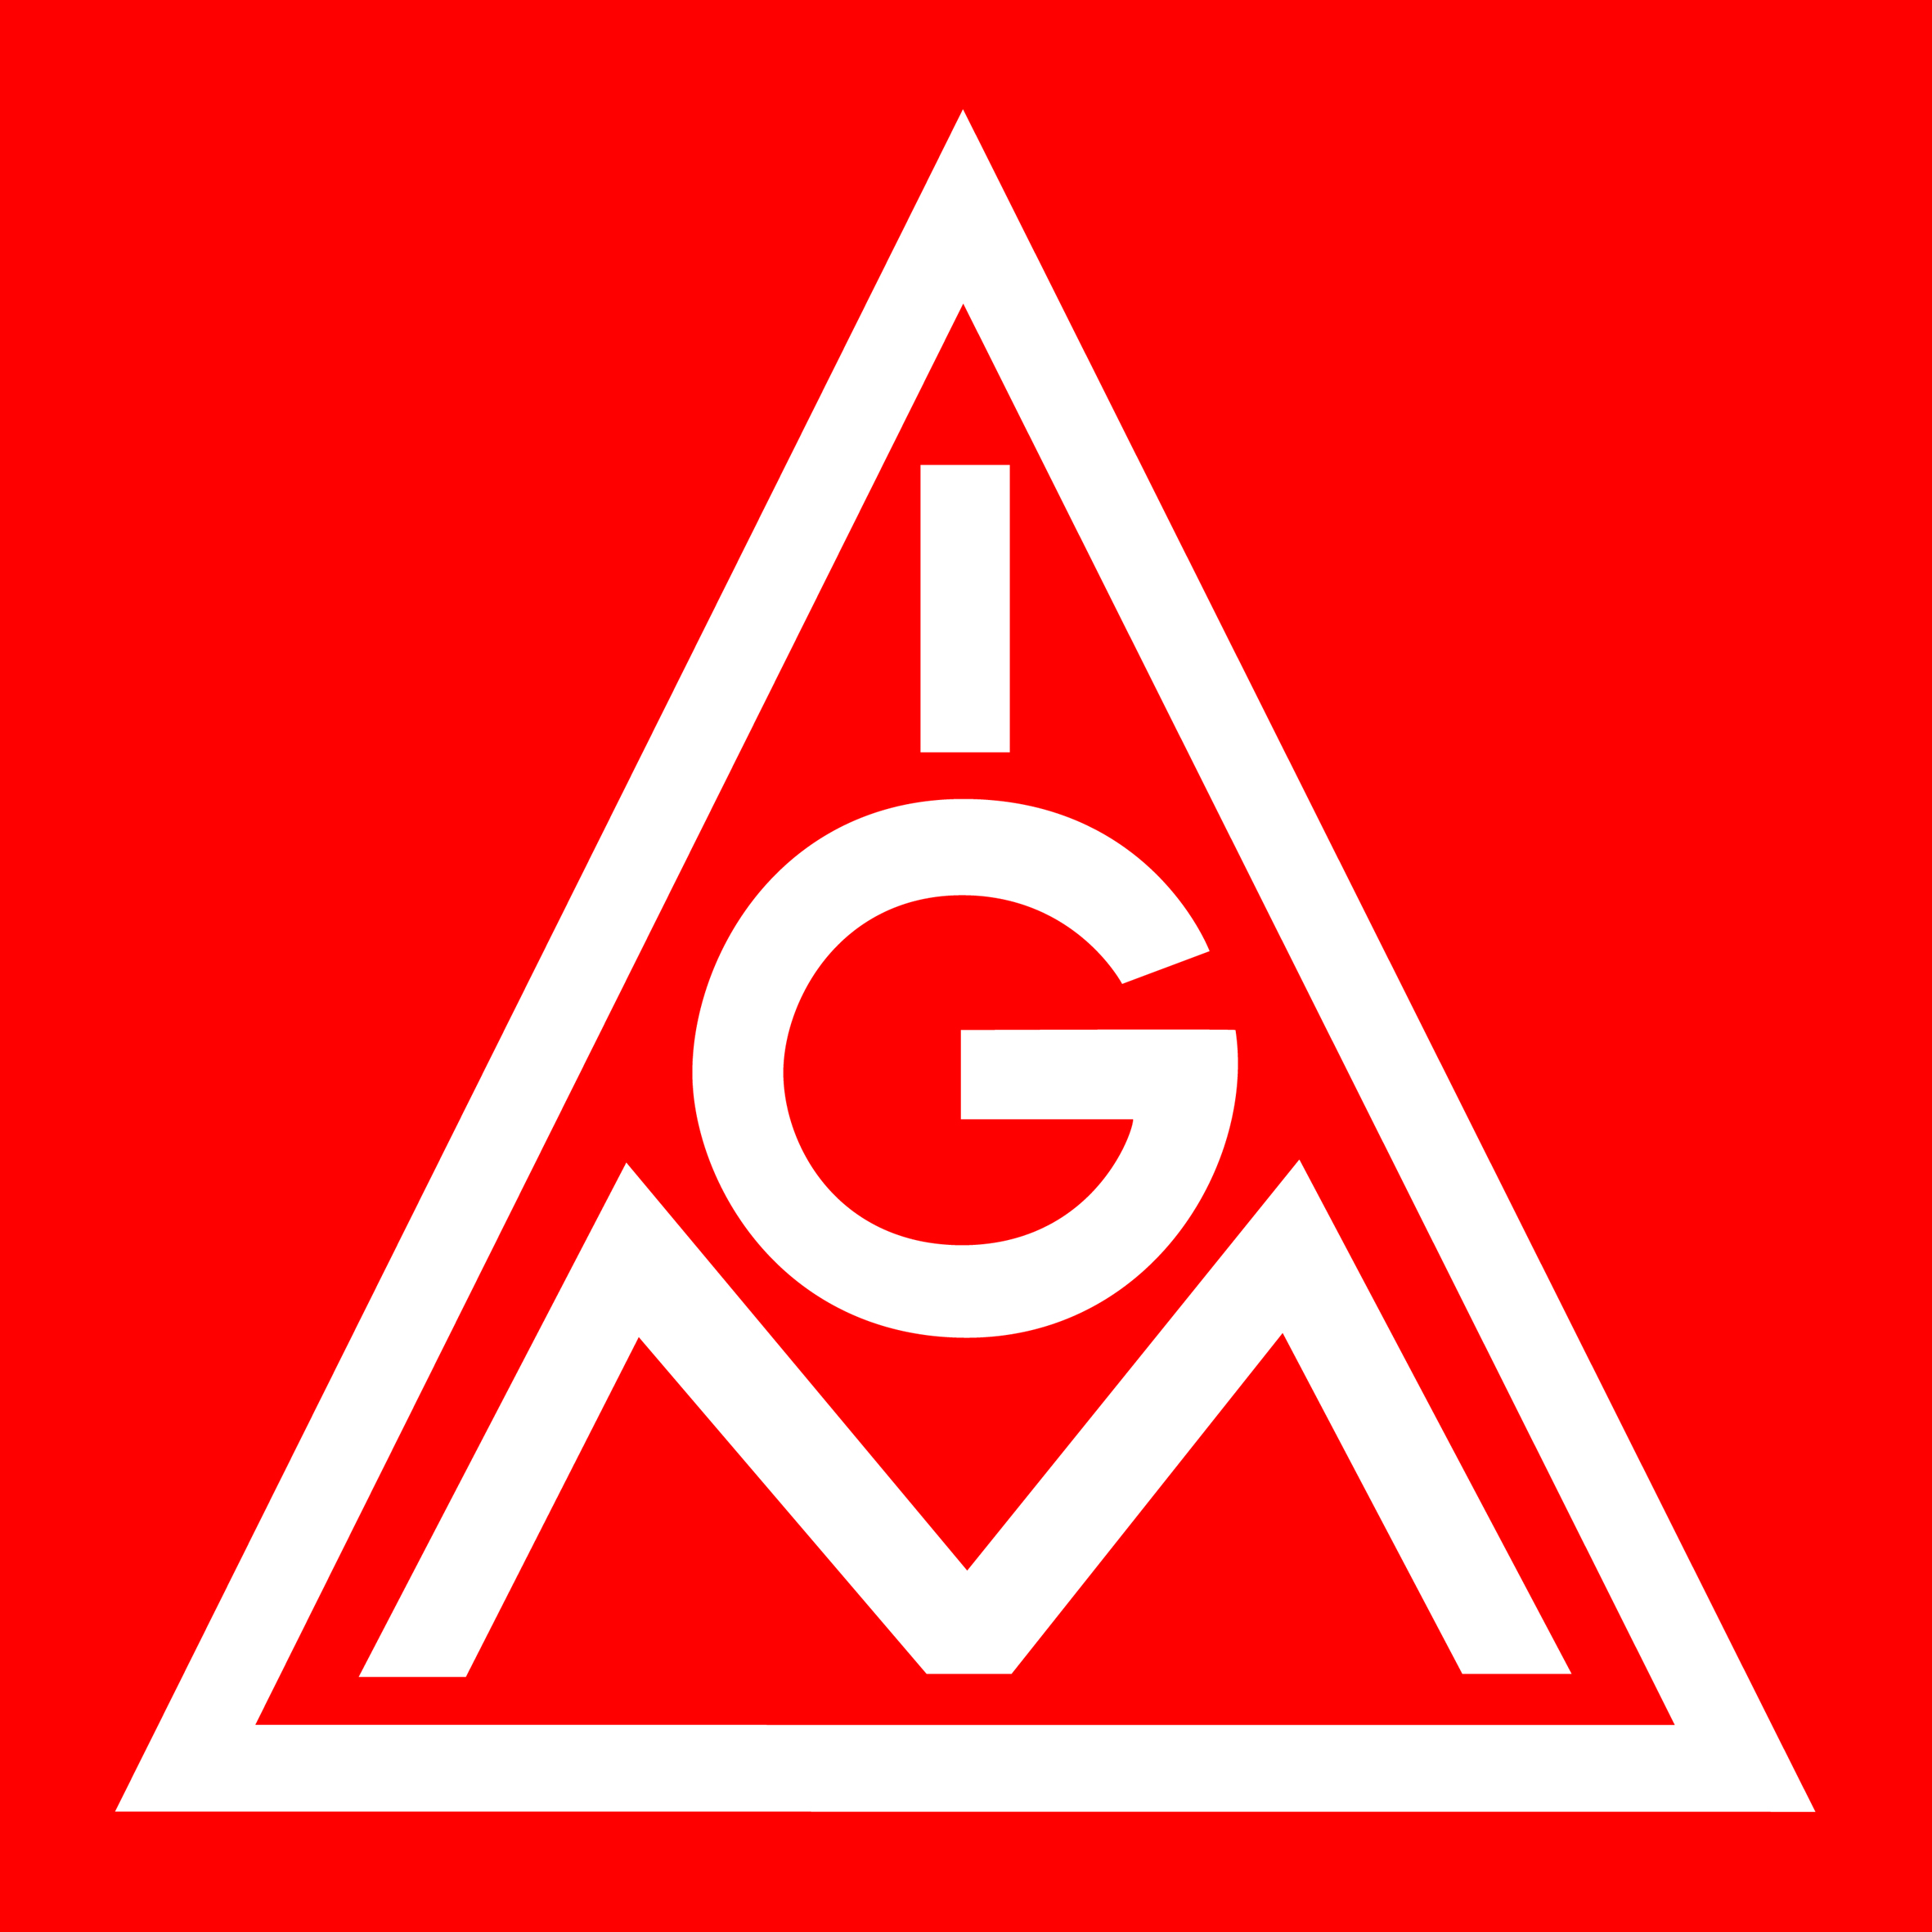 http://www.igmetall-schaeffler.de/fileadmin/01_Redaktion_Schaeffler/02-Downloads/logos/IGM.jpg